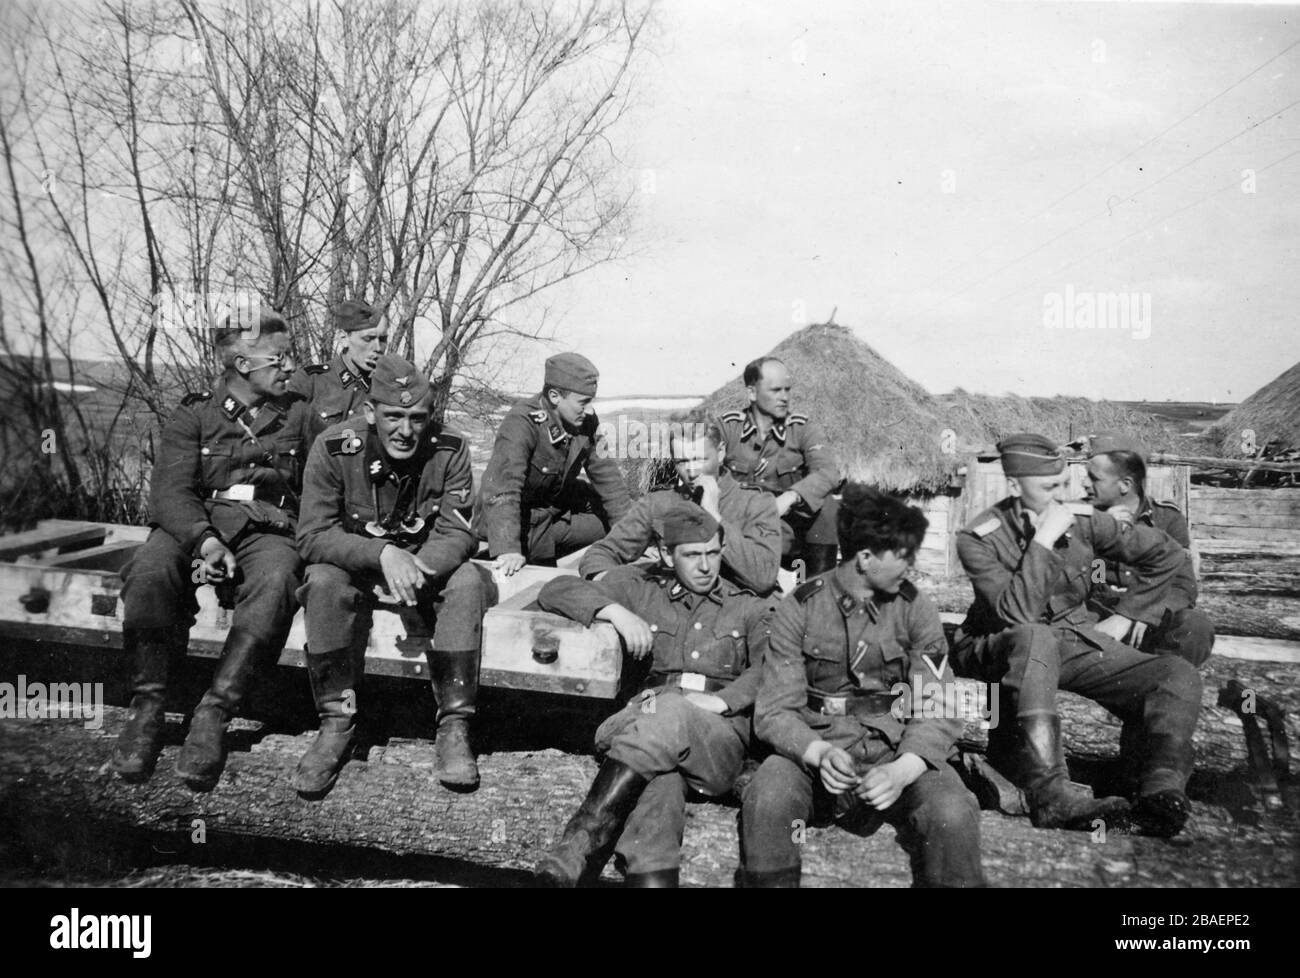 Historisches Foto des zweiten Weltkriegs/zweiten Weltkriegs über die deutsche Invasion - Trooper der Waffen-SS in der UdSSR (Ukraina) - Dorf Morosowo von 1942 Stockfoto